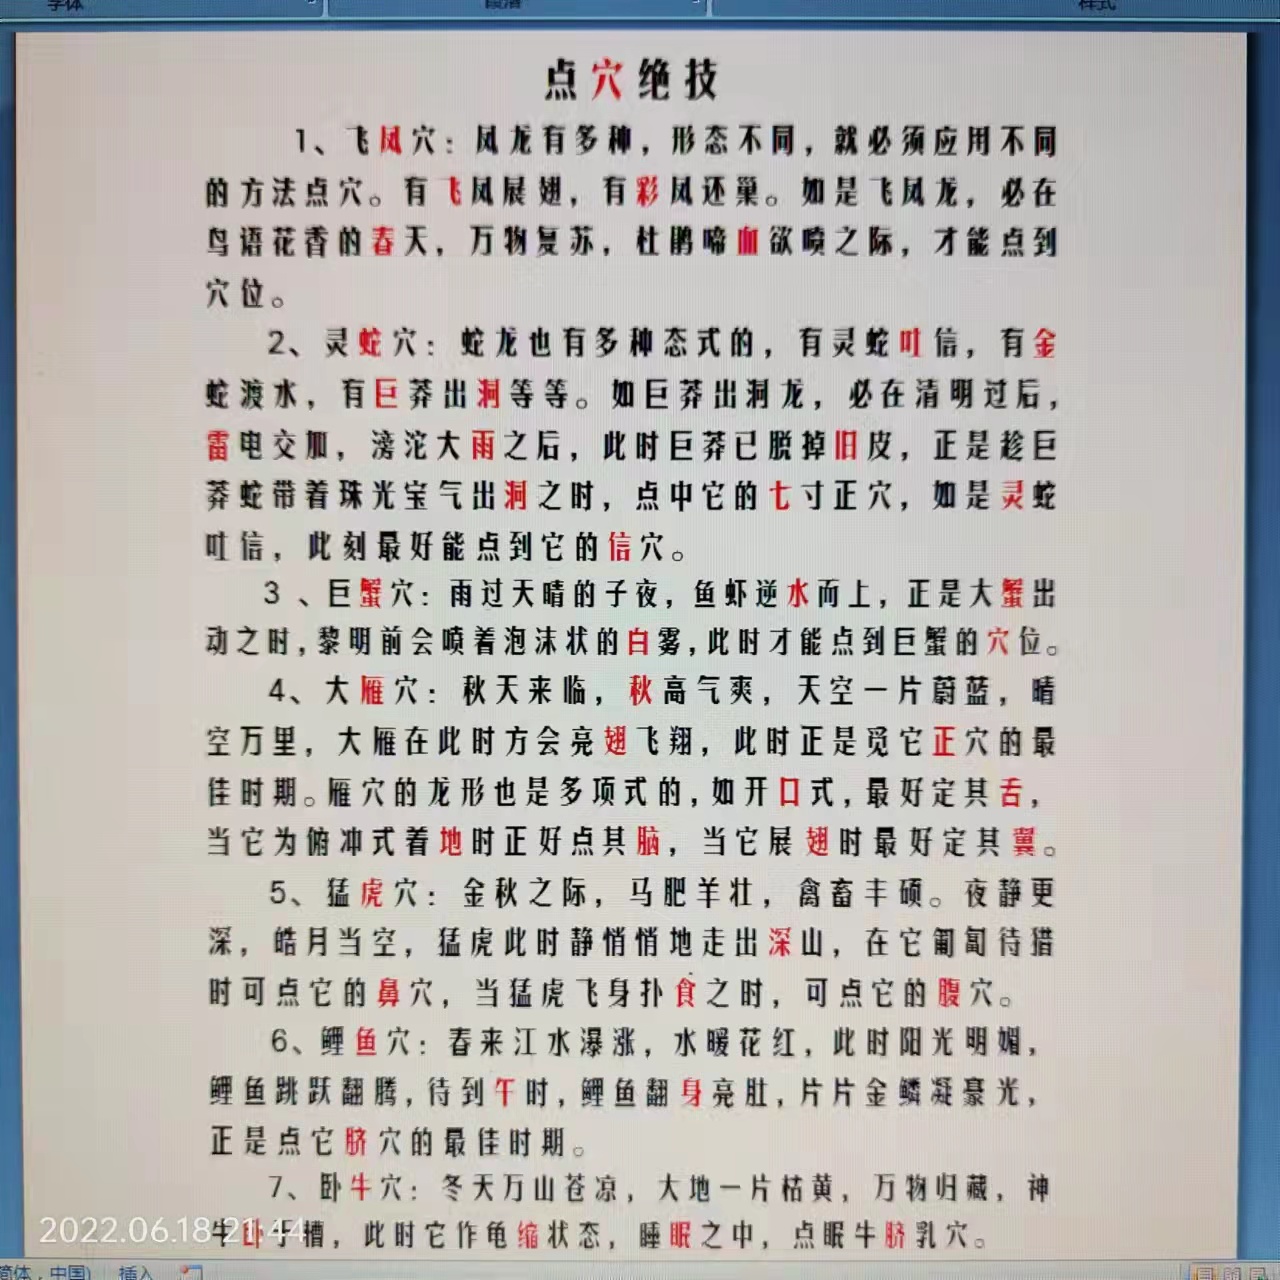 蒋加旺老师入驻全球影响力时代华人网